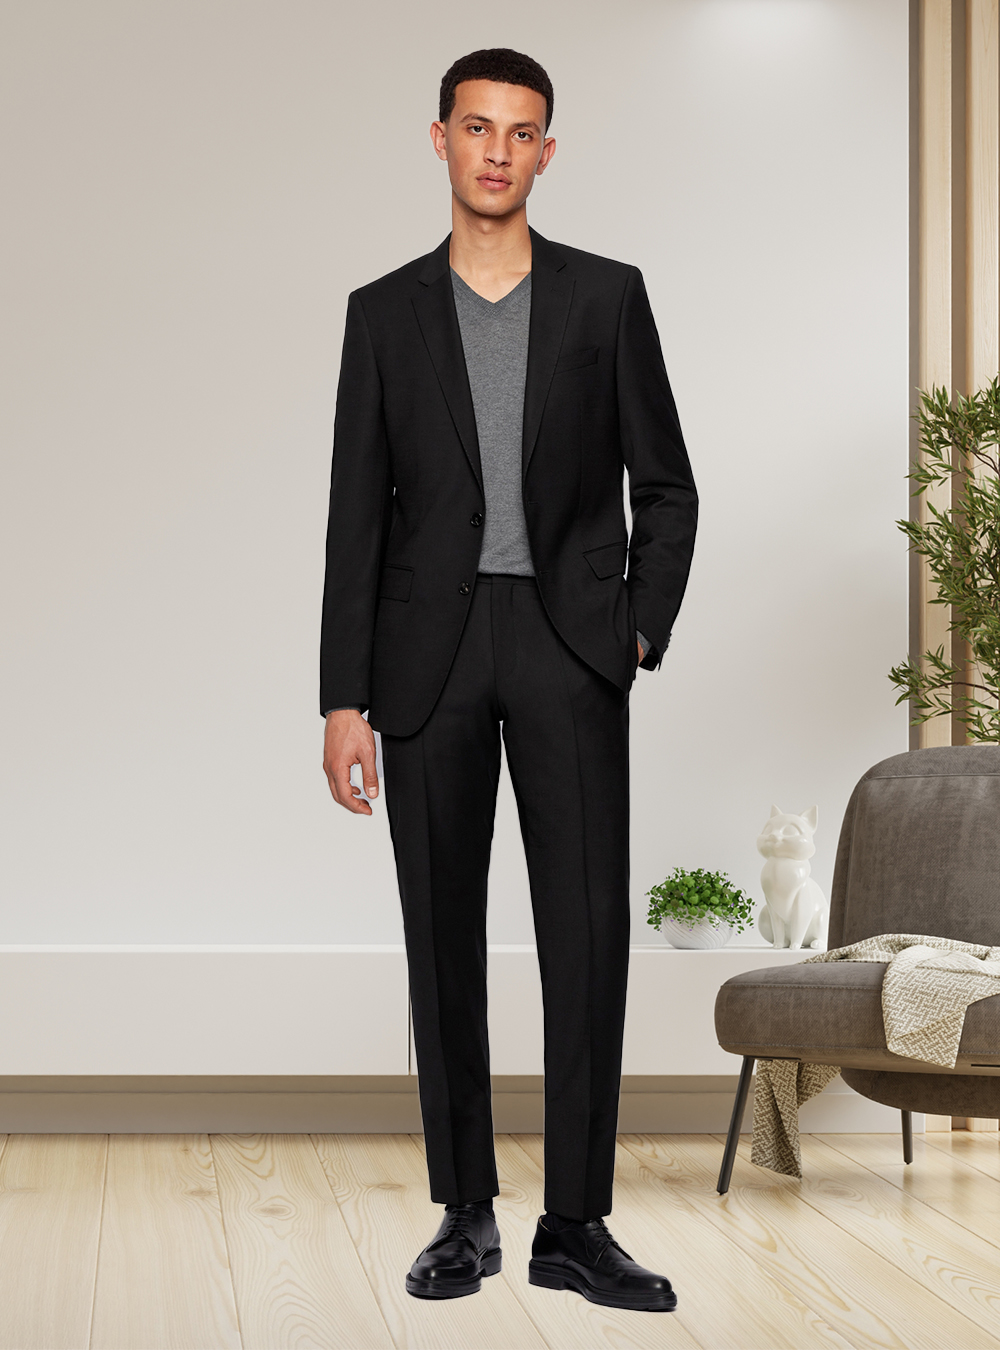 black suit, grey v-neck, and black derby shoes